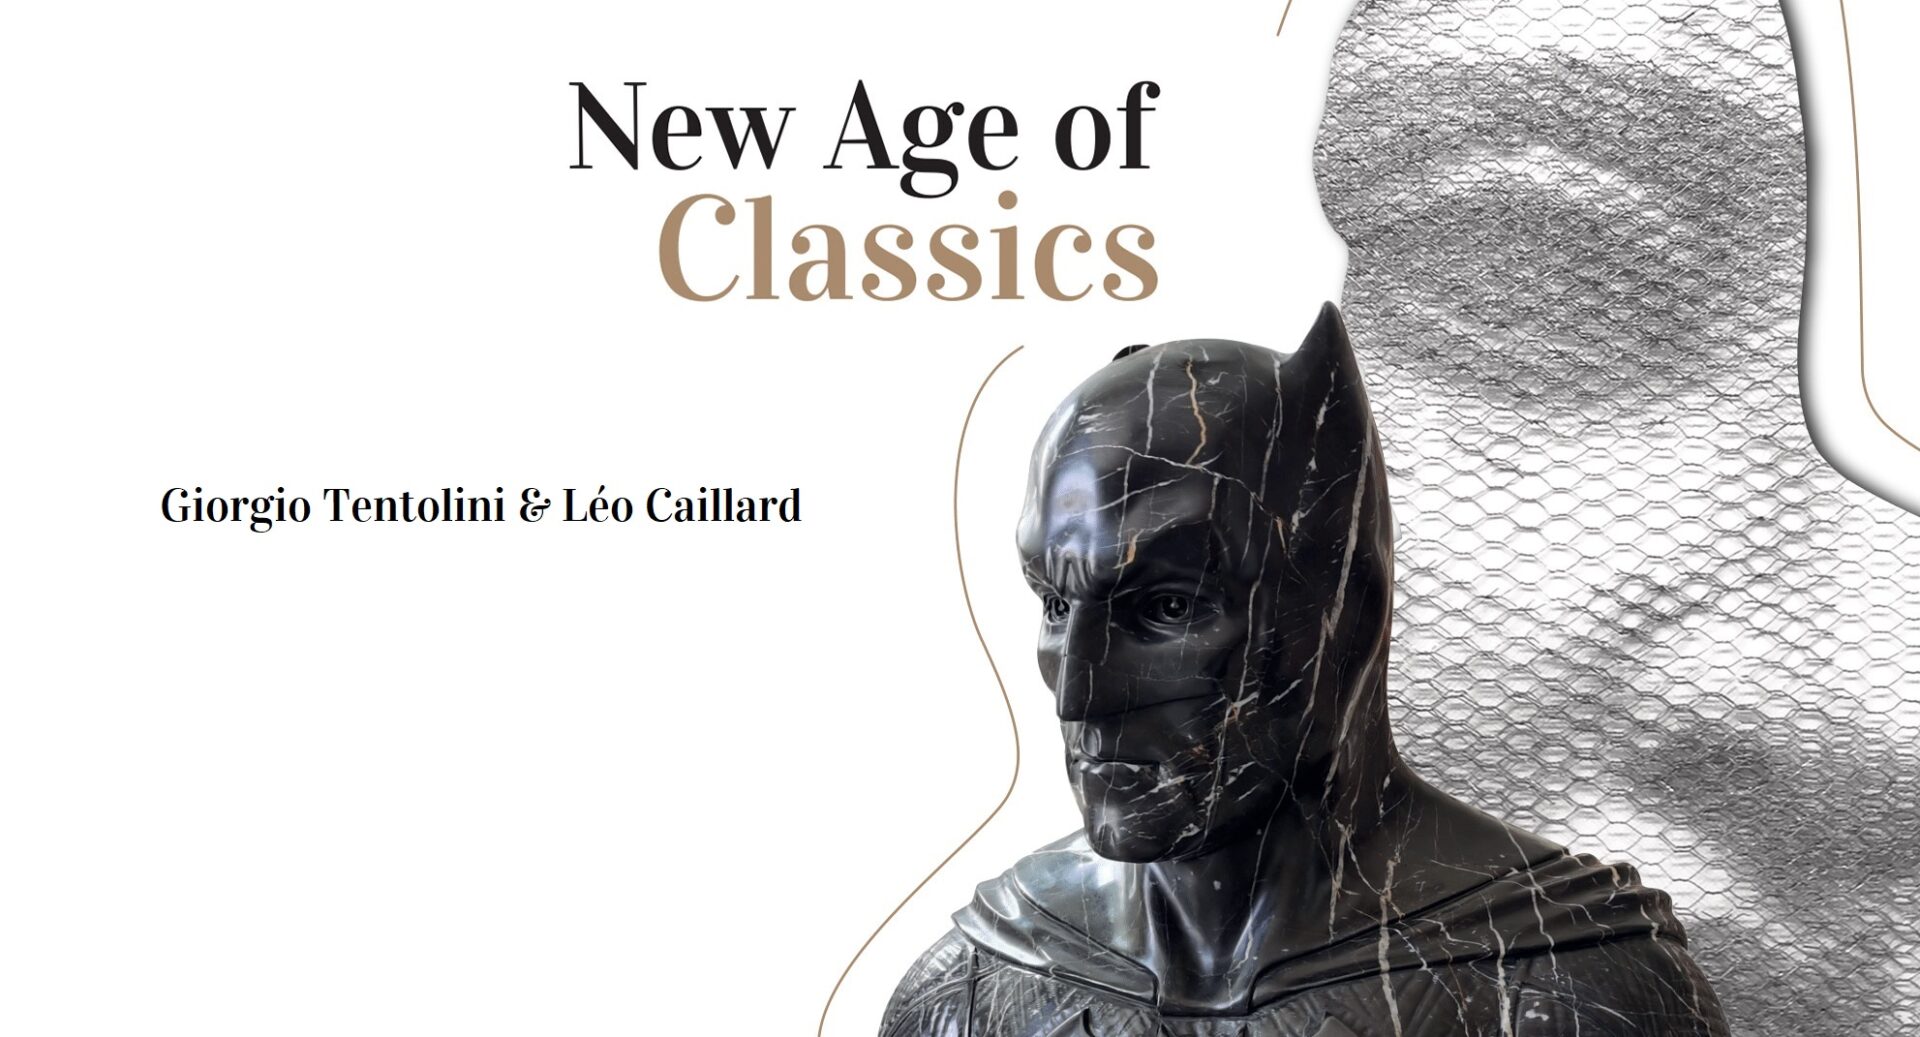 Catalogue de l'exposition New Ages Of Classics consacrée aux artistes Giorgio Tentolini et Léo Caillard